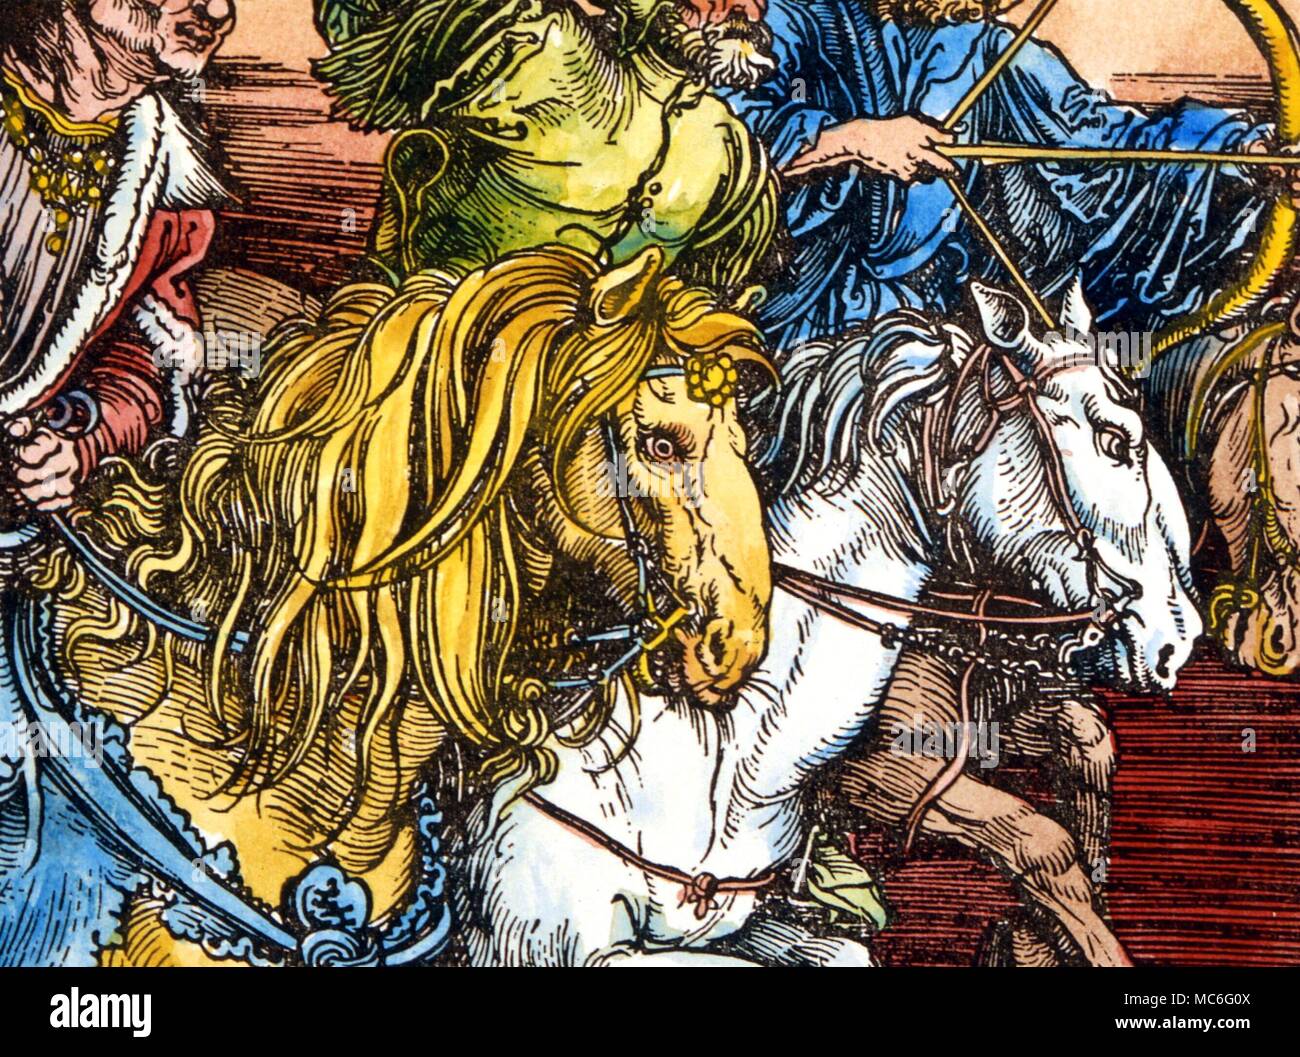 Animaux - Cheval trois des quatre cavaliers de l'Apocalypse. Détail de la grande impression biblique faite par Albrecht durer, en 1493 Banque D'Images